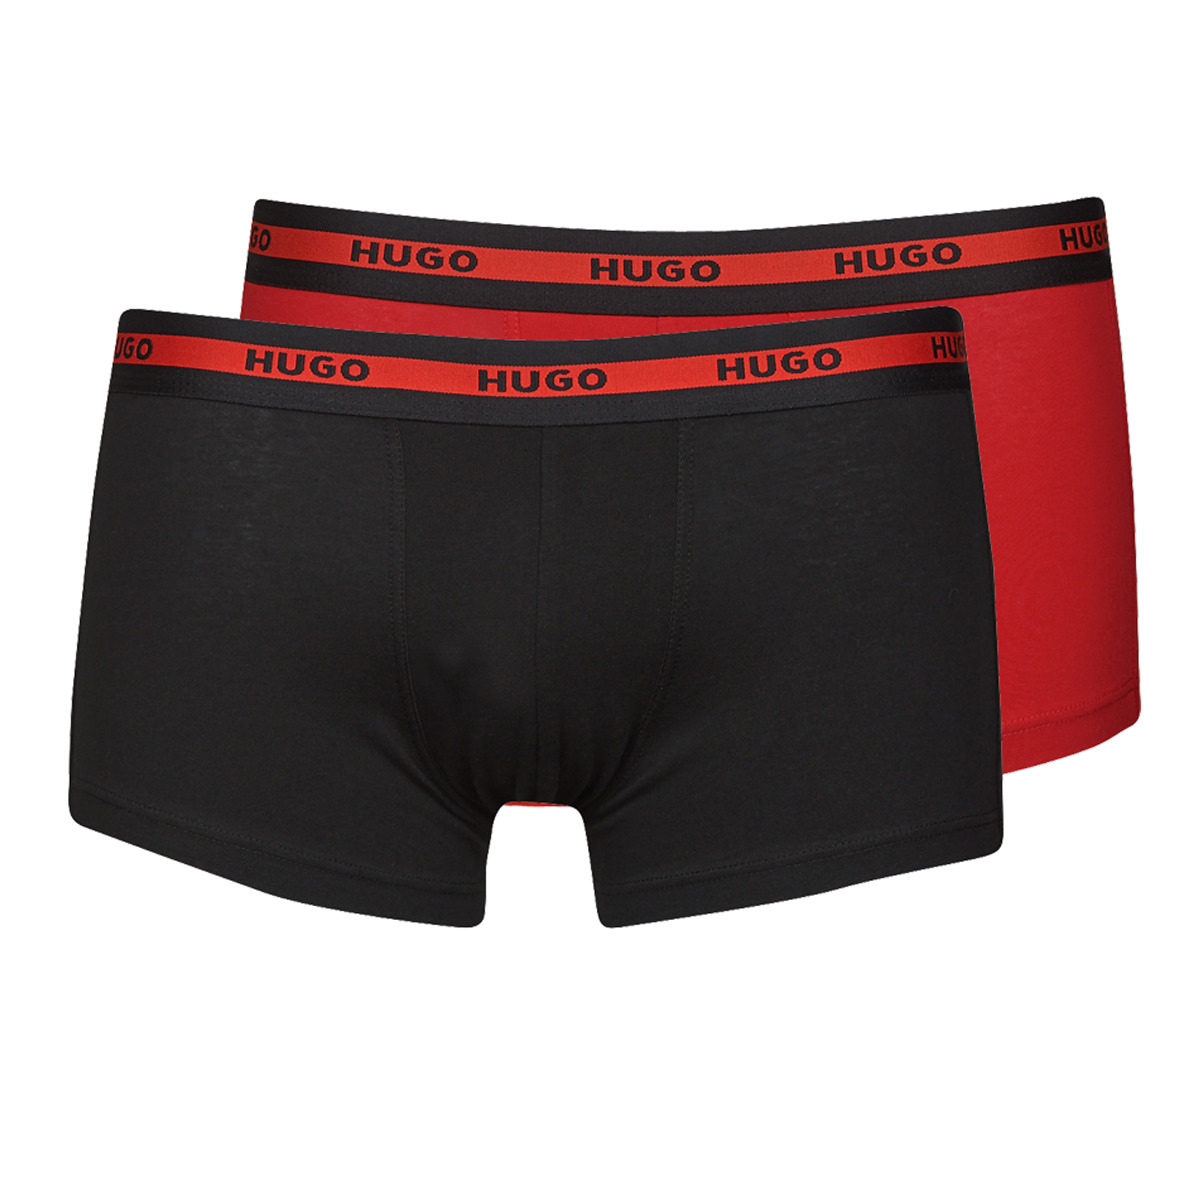 Ver os favoritos Boxer HUGO TRUNK TWIN PACK X2 Preto / Vermelho